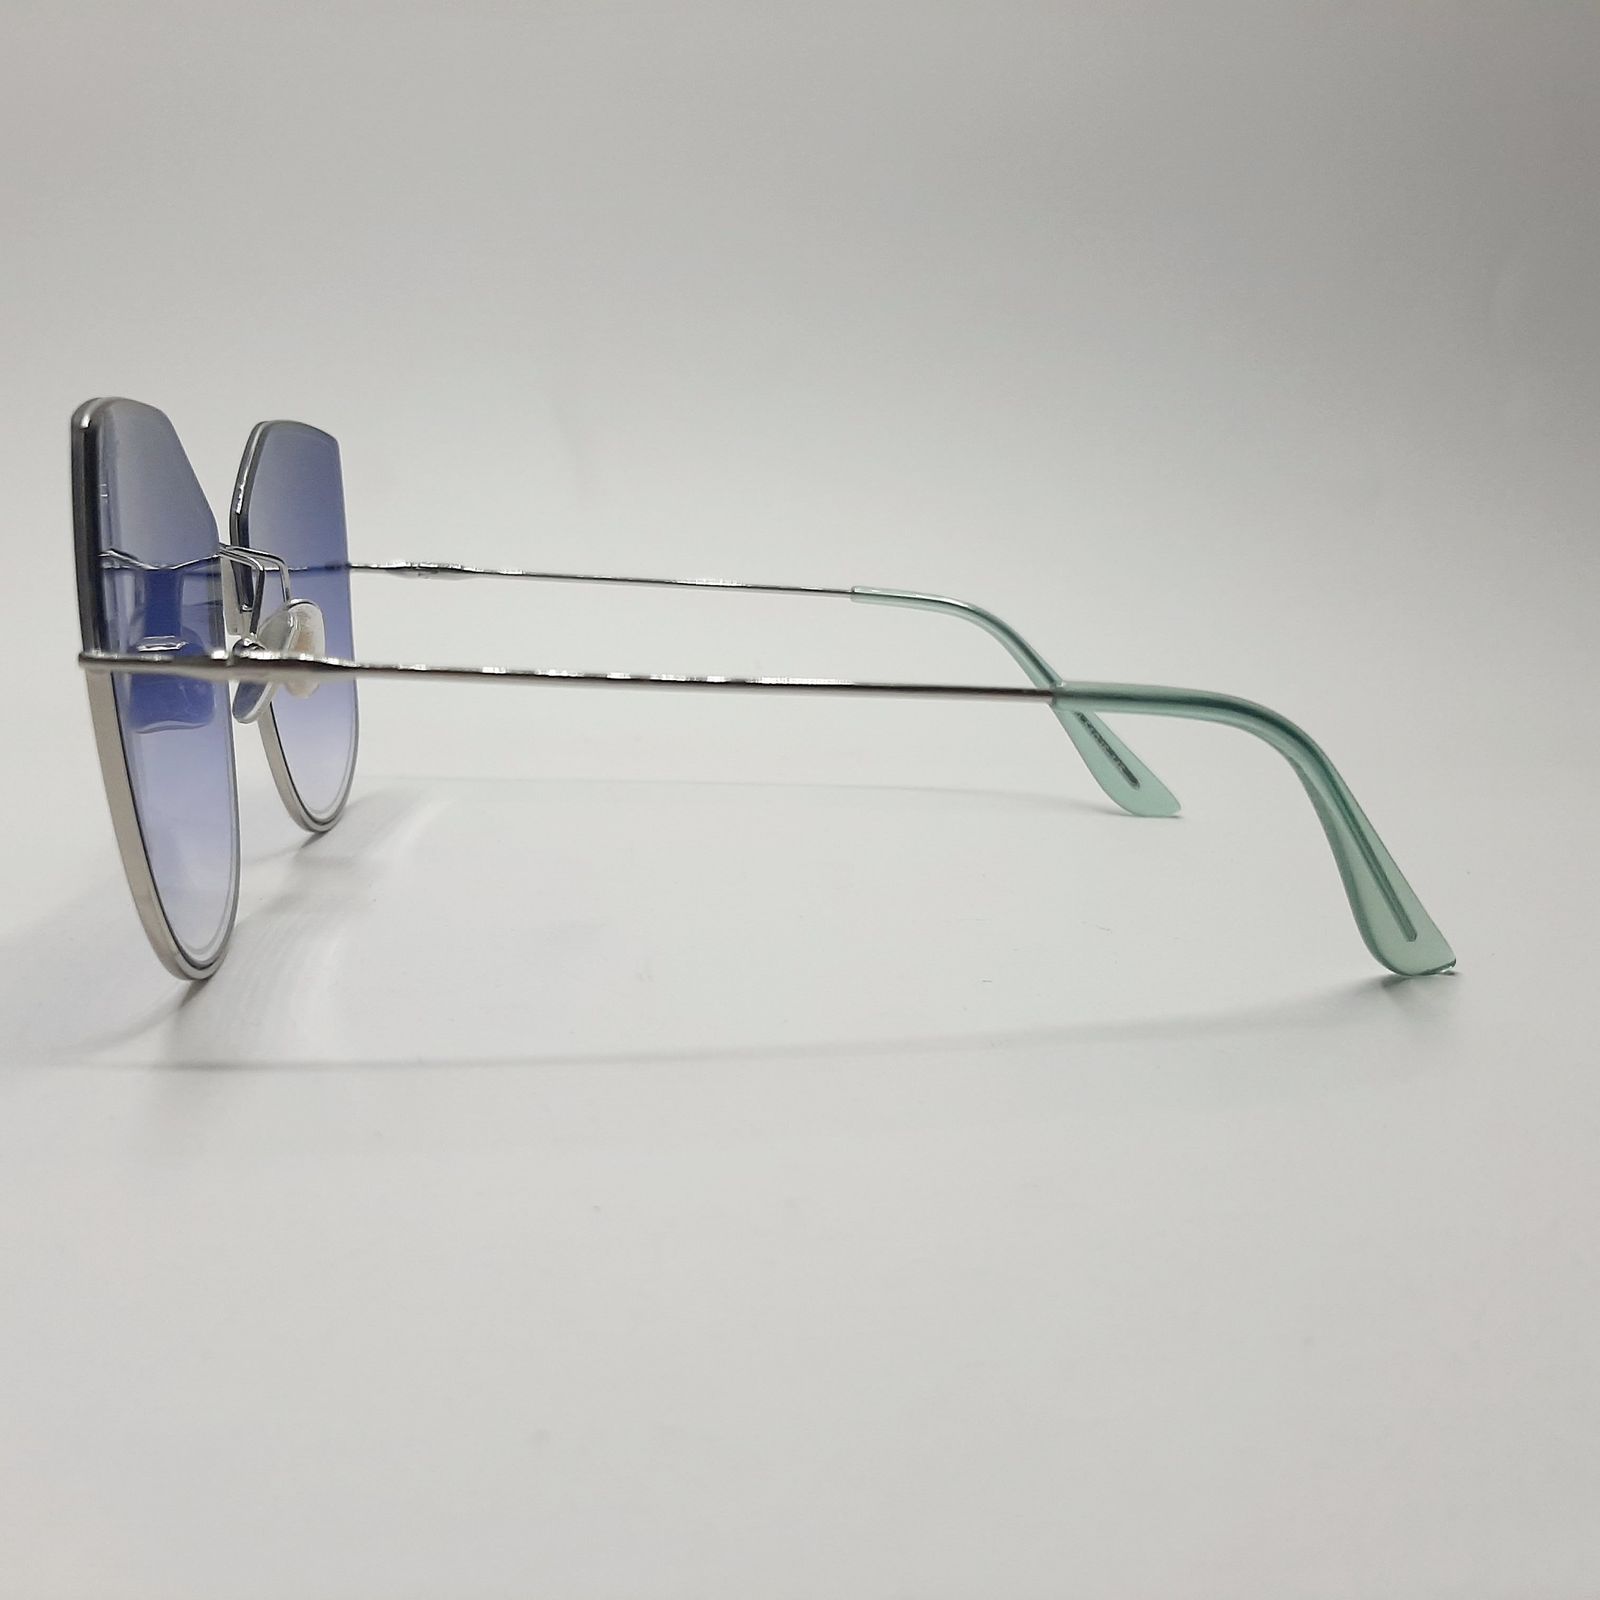 عینک آفتابی مدل S31030c21 -  - 5